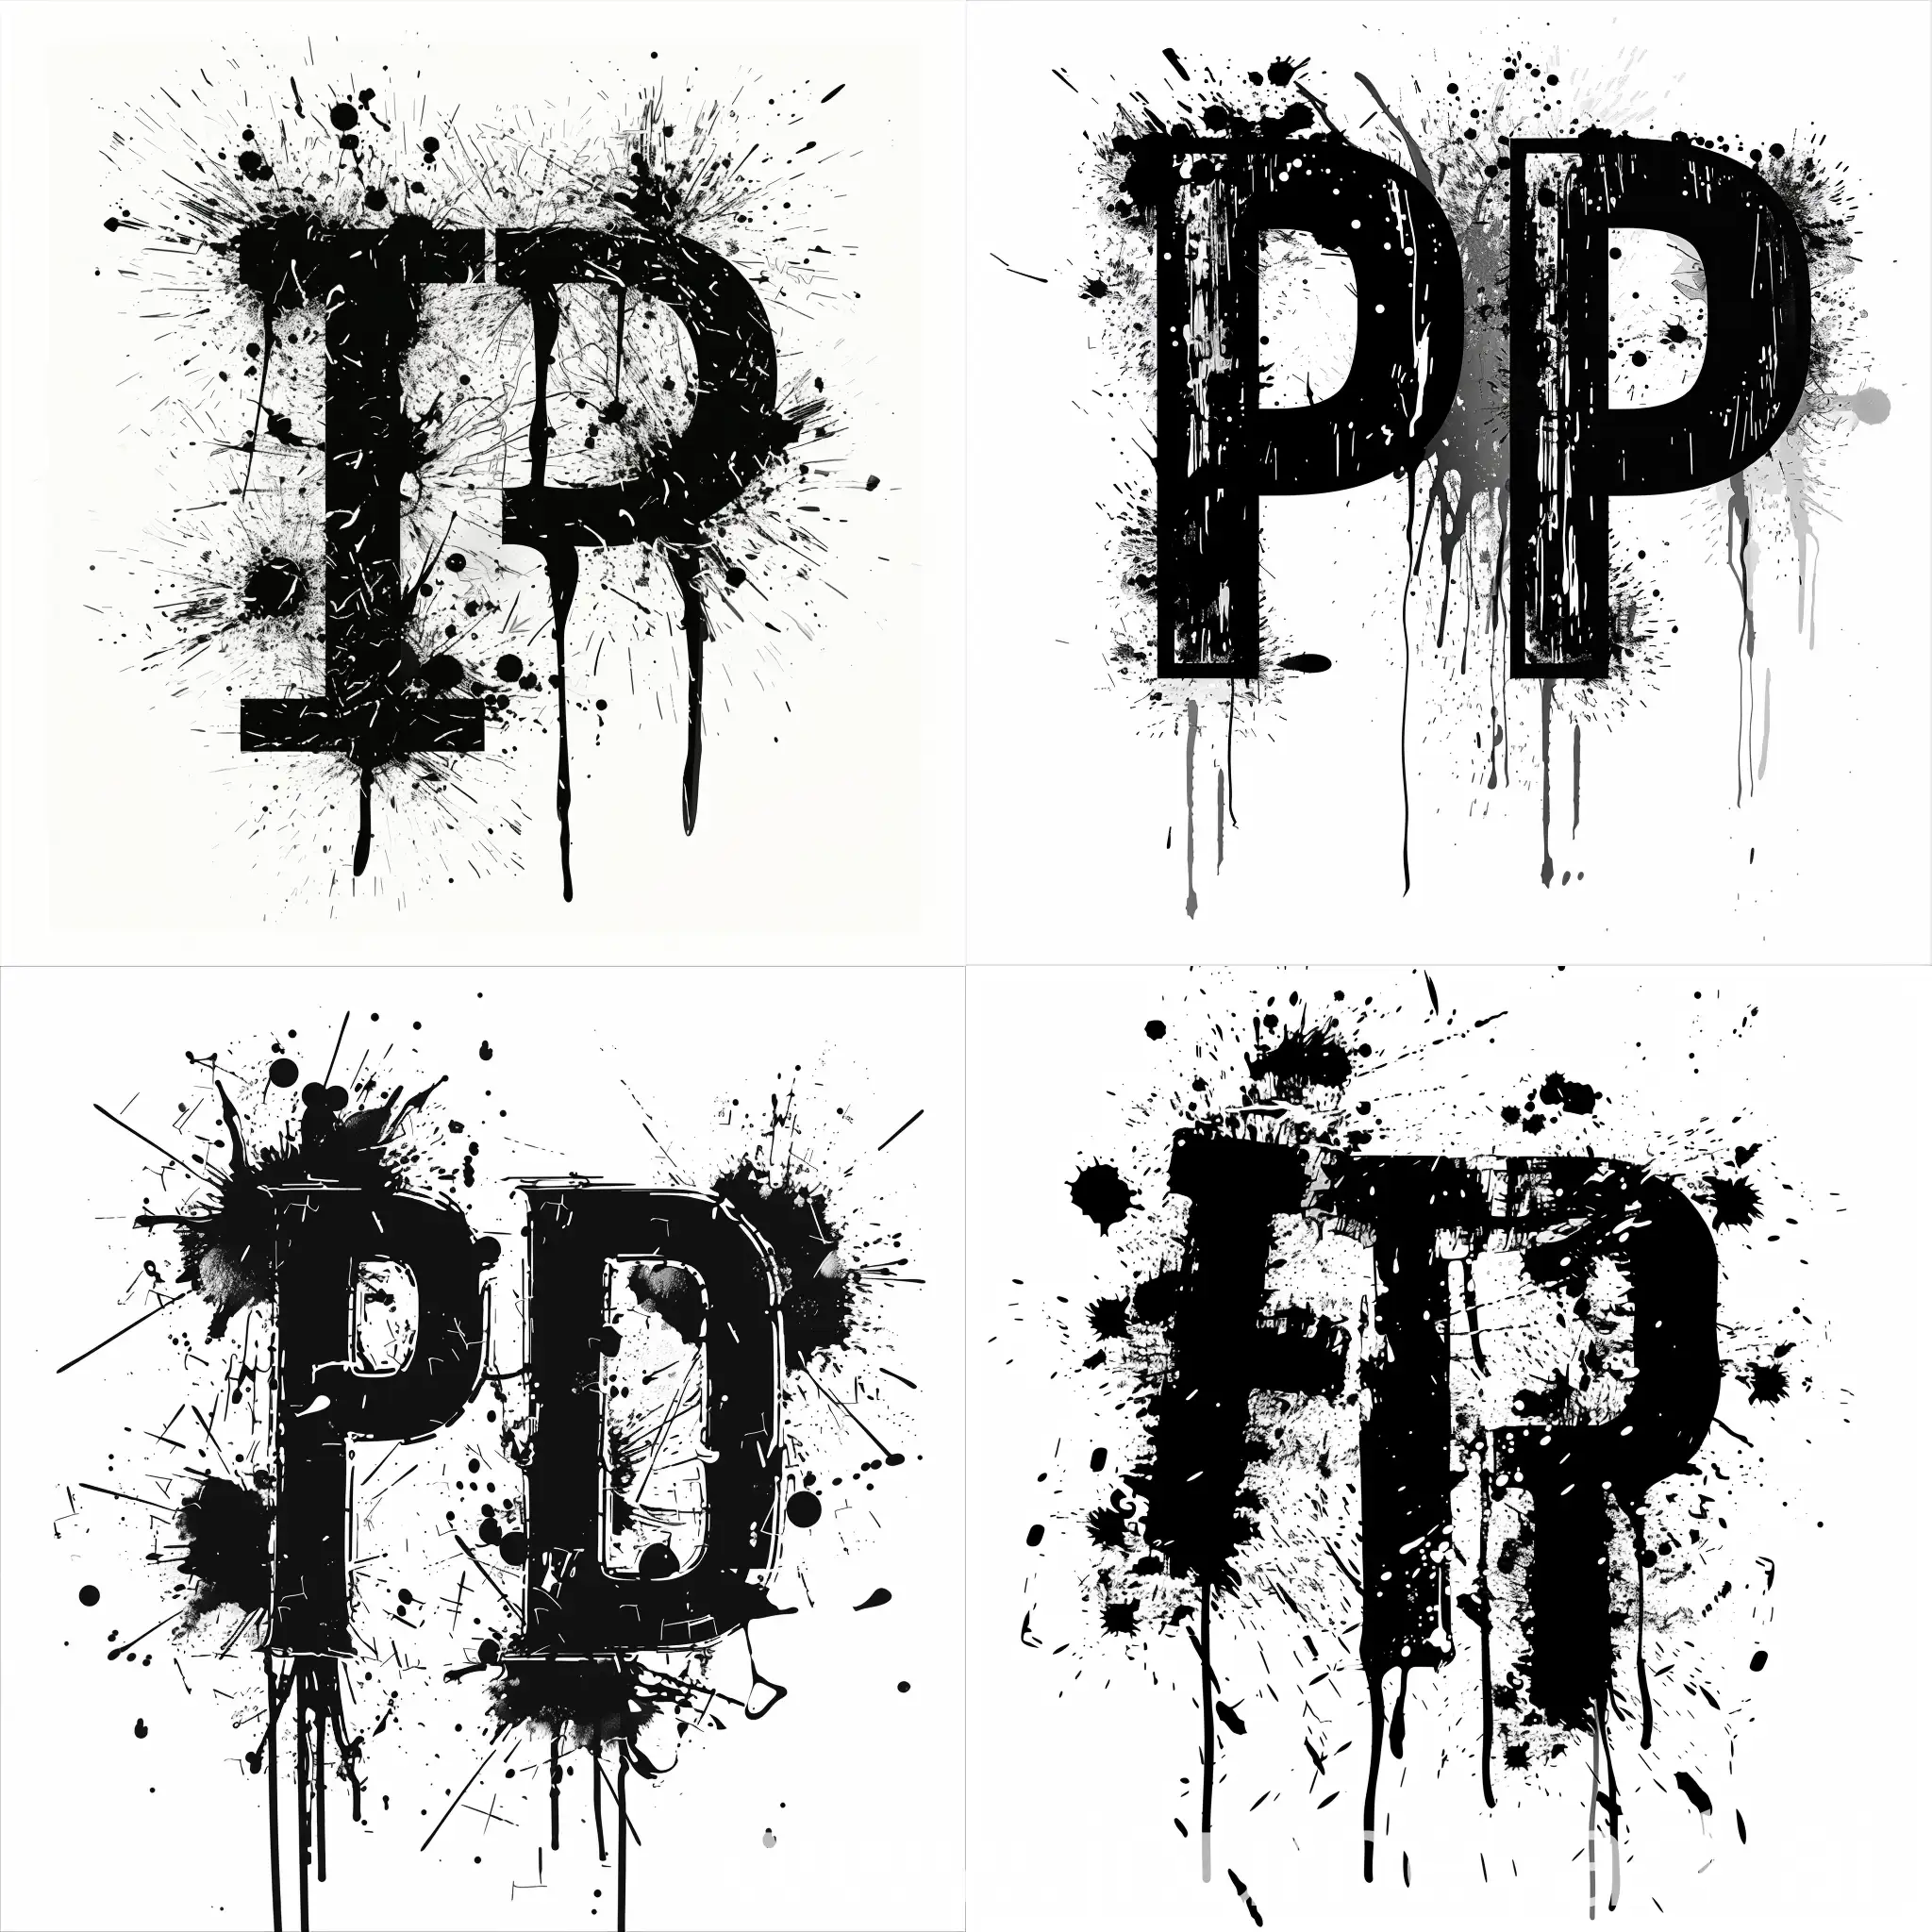 泼墨风格 字母设计 内容为PJ